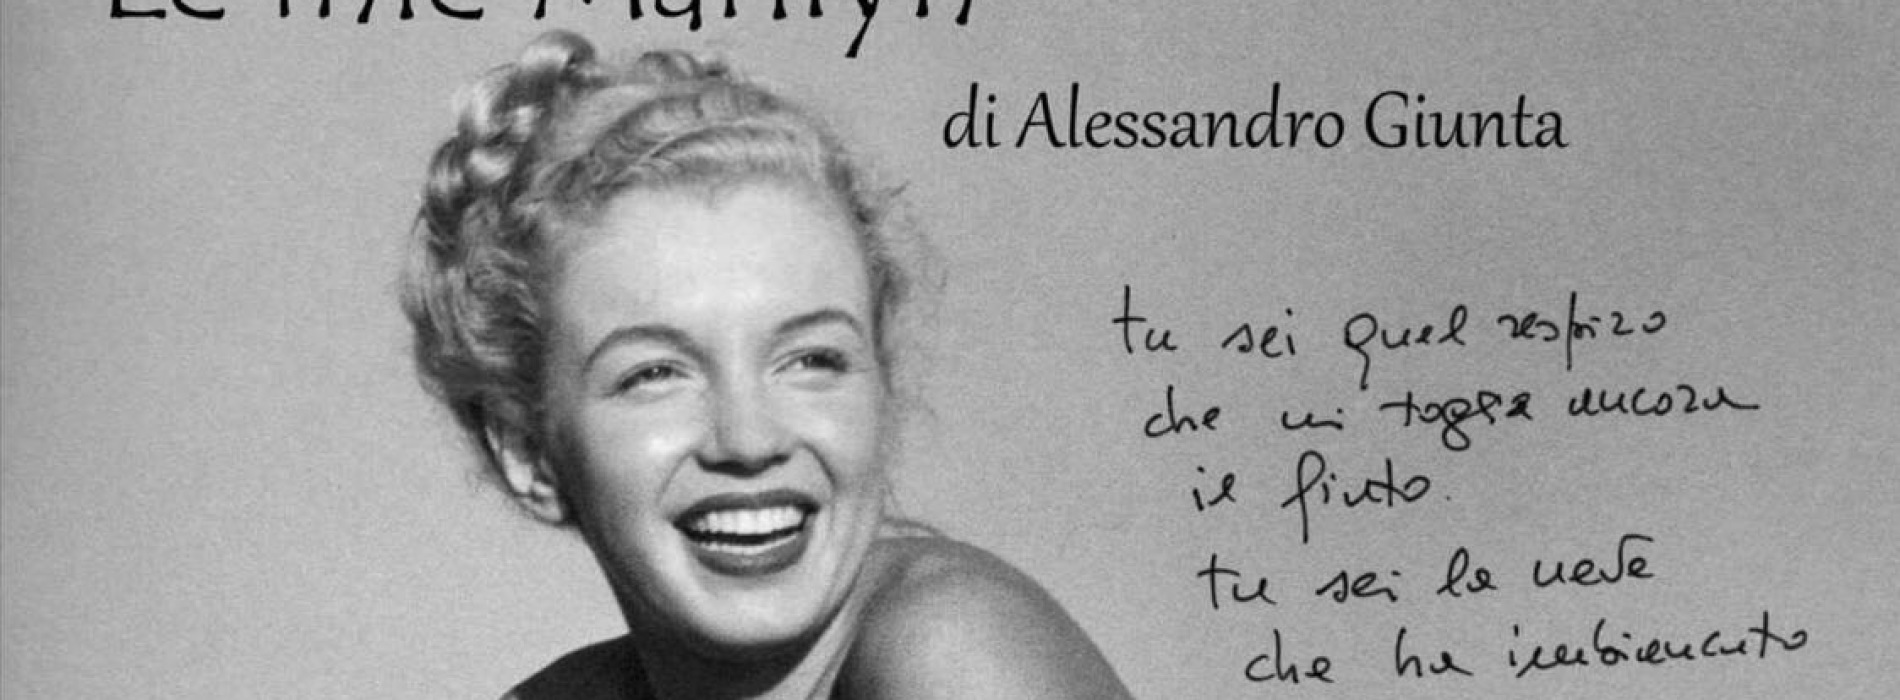 Ercolano, a Villa Fiorita le amate Marilyn di Alessandro Giunta